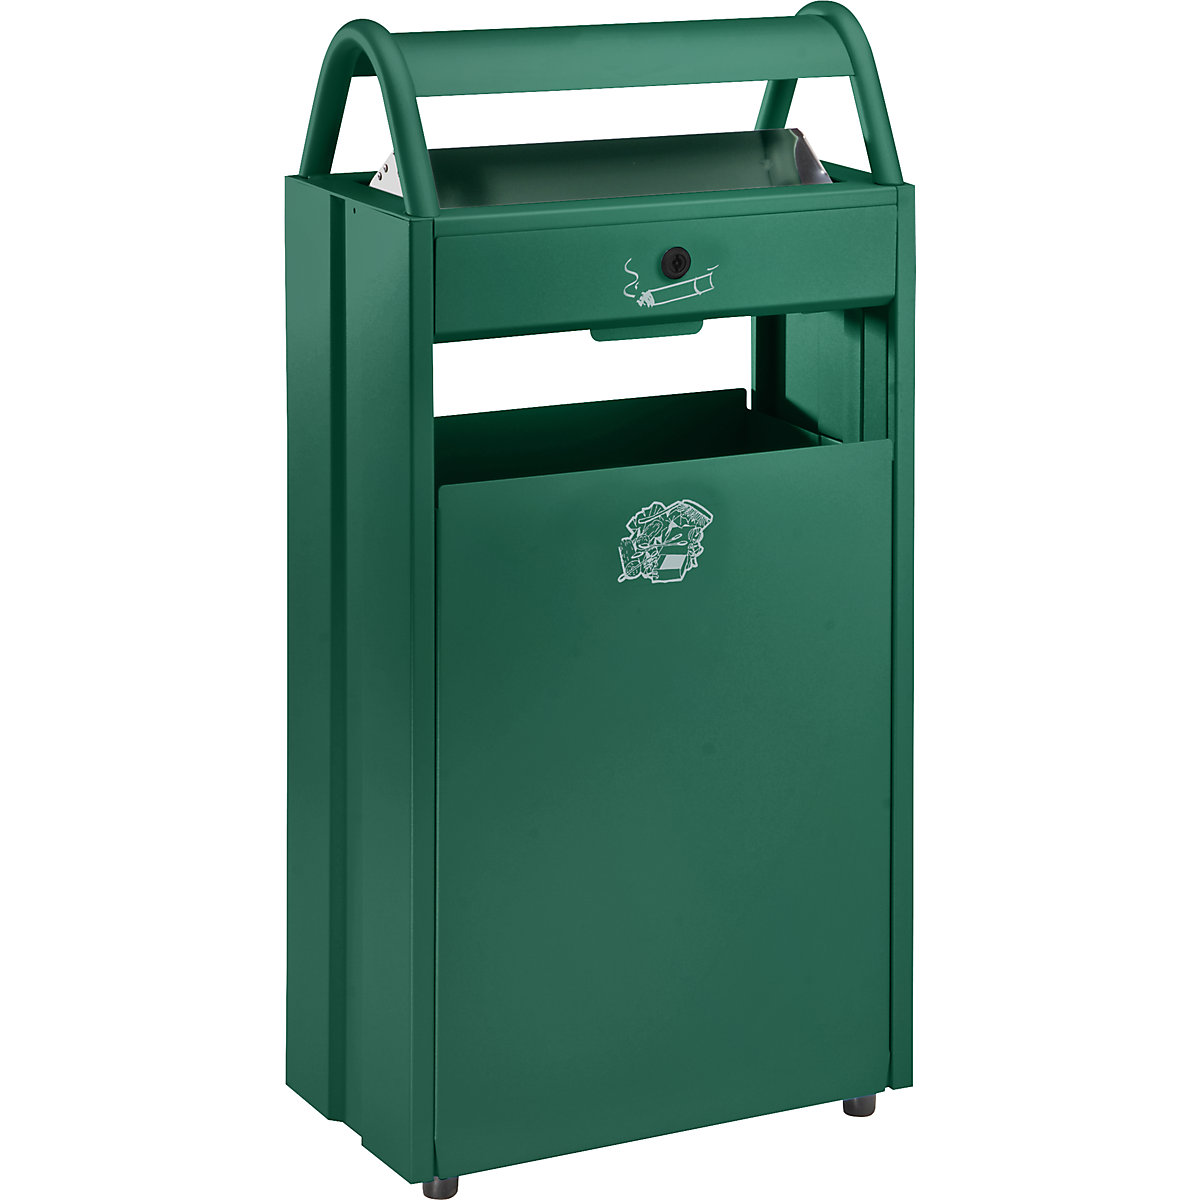 VAR – Sběrač odpadů s popelníkem a ochrannou stříškou proti dešti, objem 60 l, š x v x h 480 x 960 x 250 mm, zelená RAL 6005